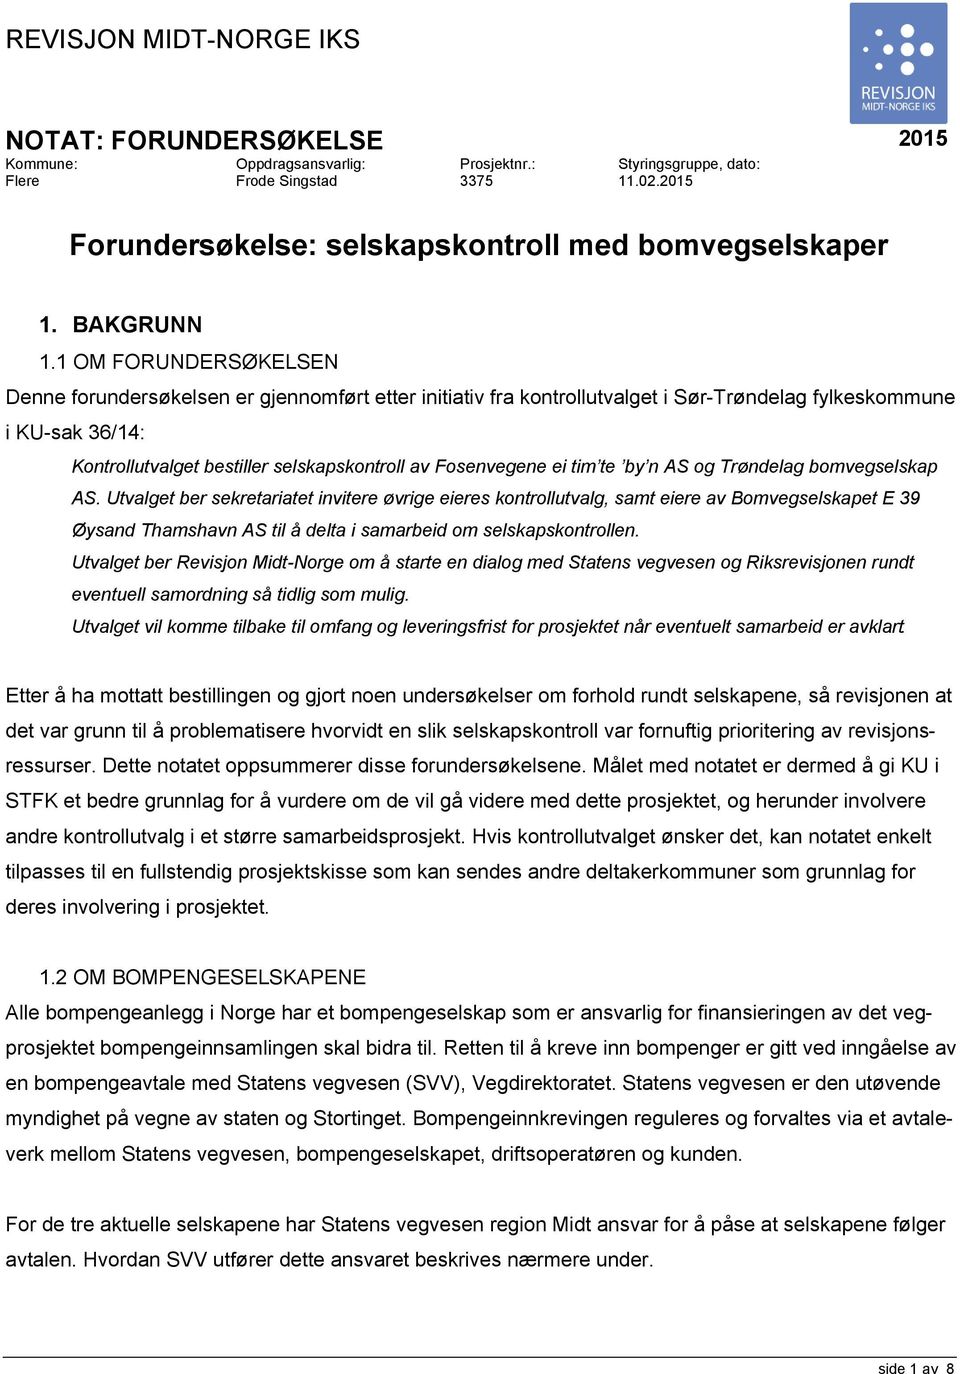 1 OM FORUNDERSØKELSEN Denne forundersøkelsen er gjennomført etter initiativ fra kontrollutvalget i Sør-Trøndelag fylkeskommune i KU-sak 36/14: Kontrollutvalget bestiller selskapskontroll av